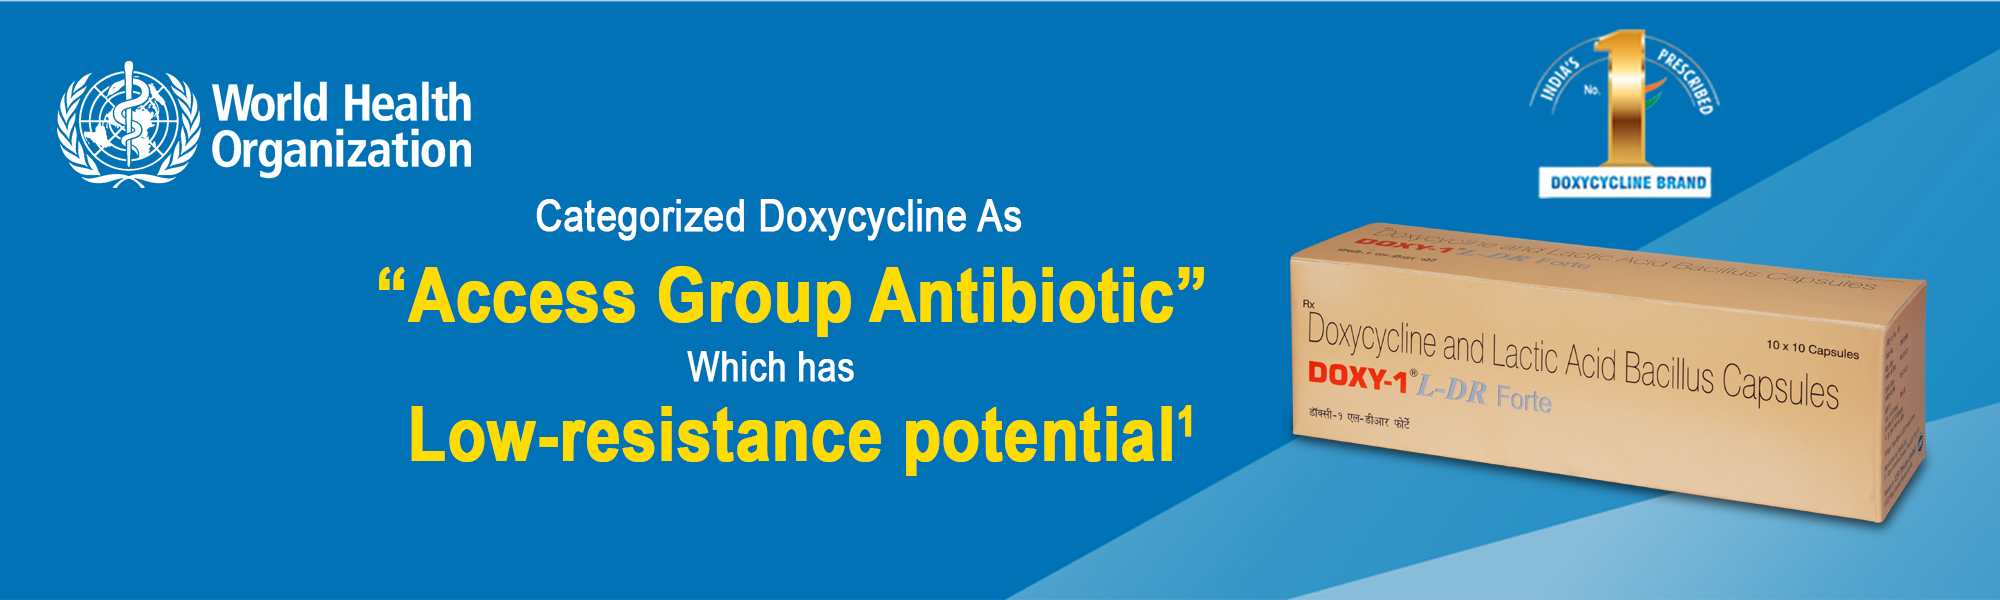 Doxycycline-doxy